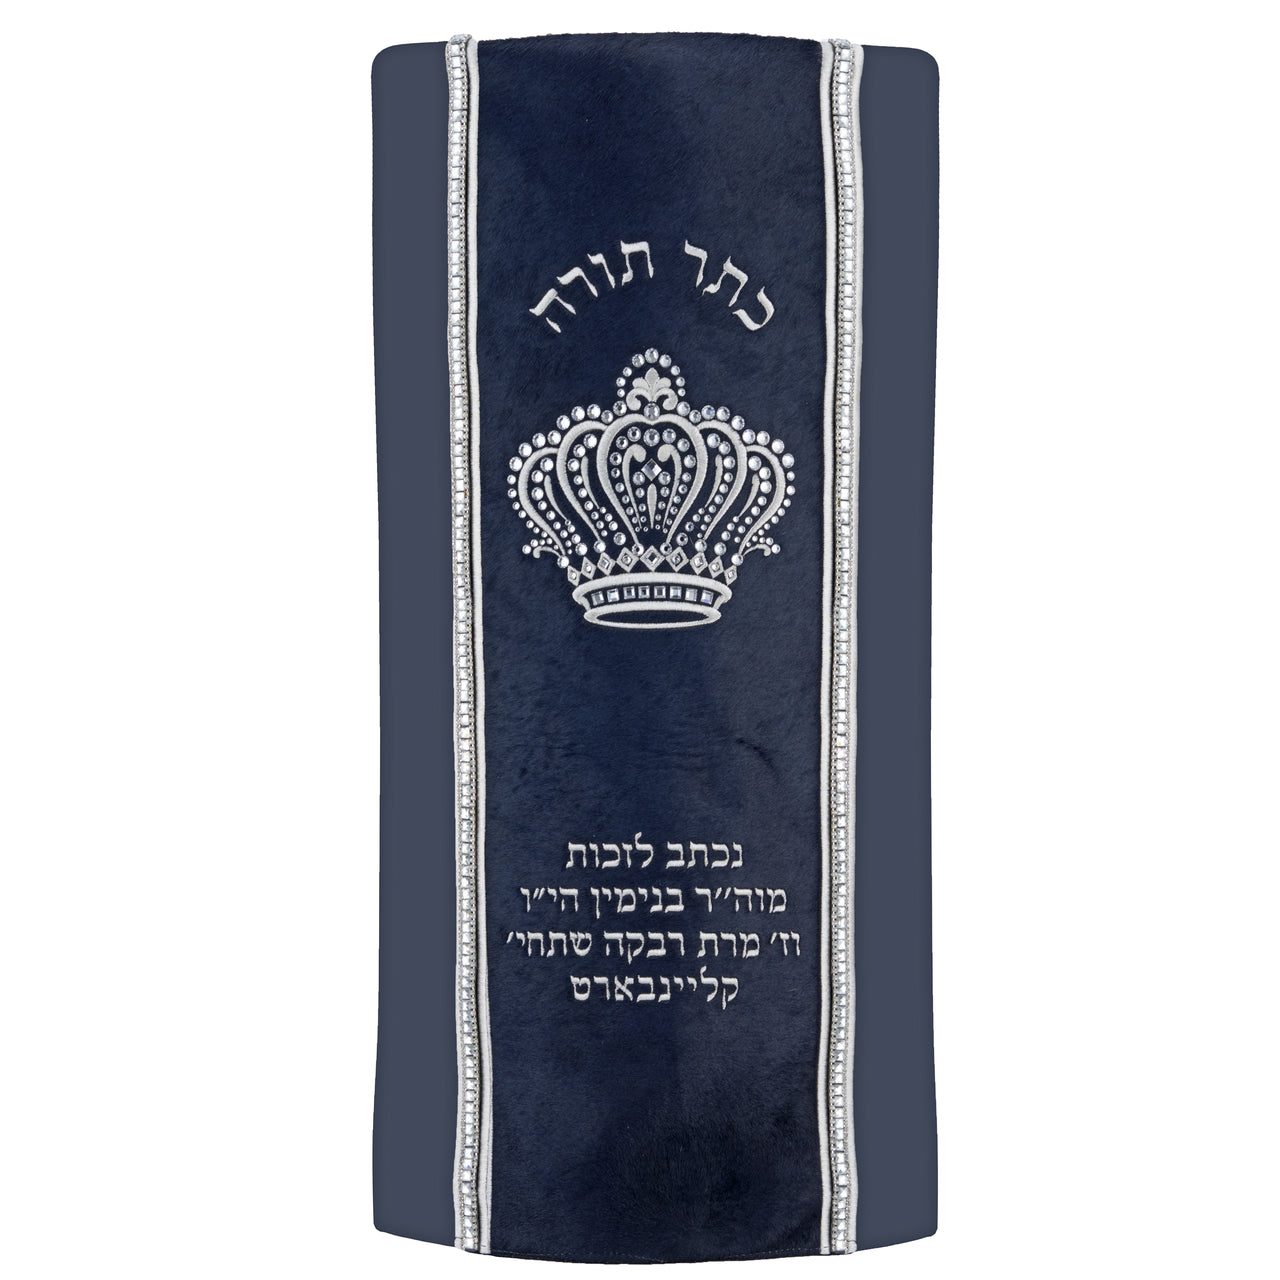 Sefer Torah Mantel #18-2